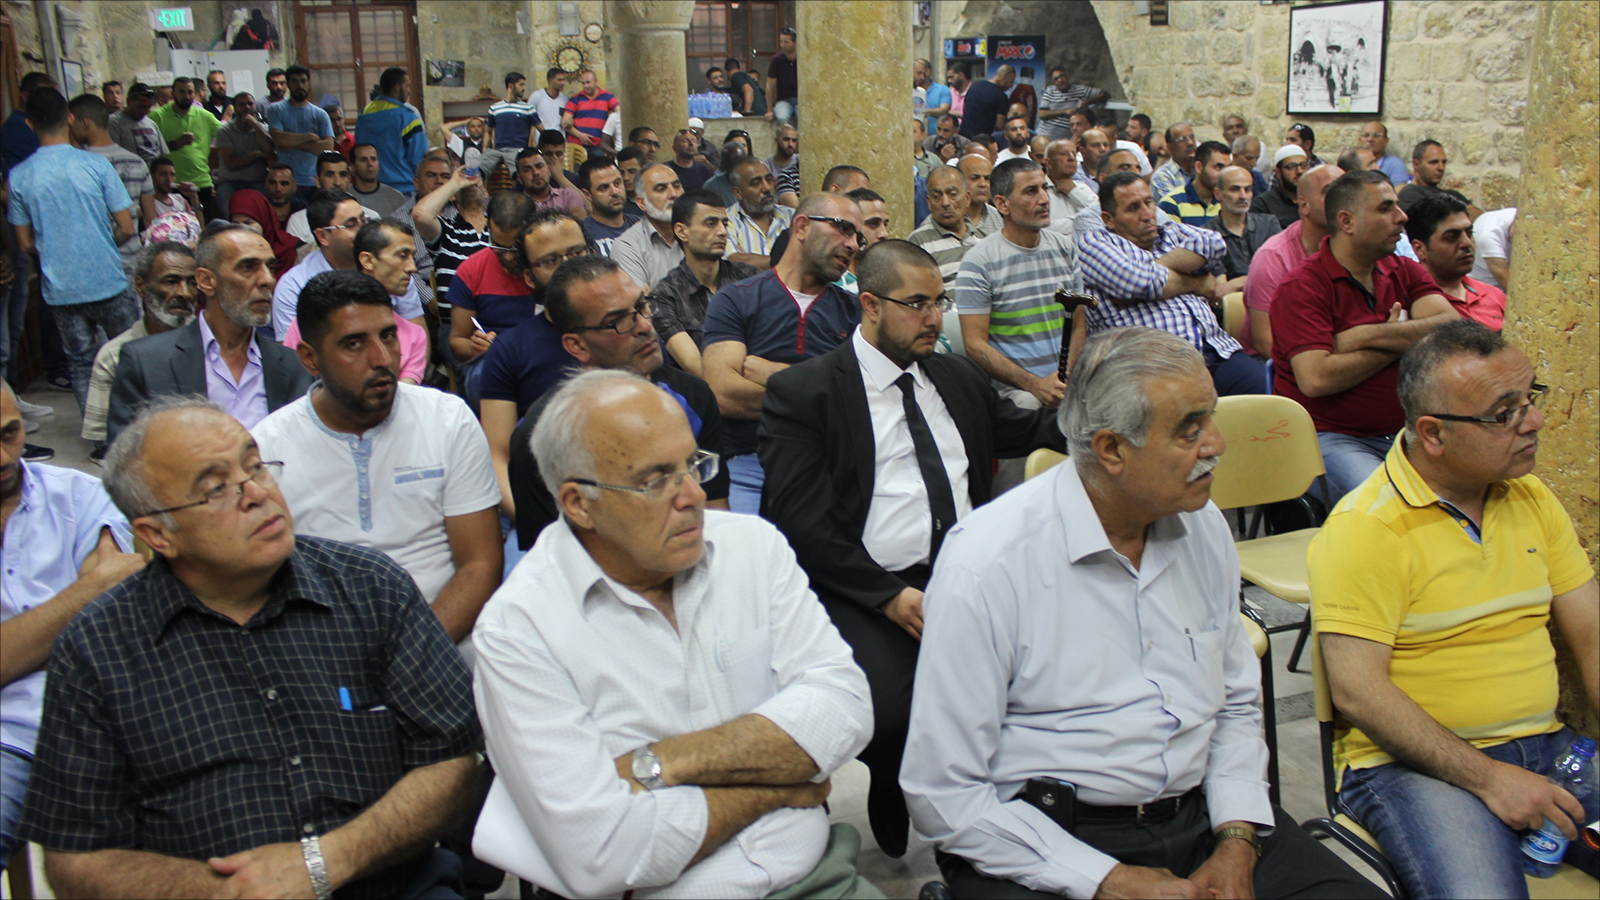 سكان البلدة القديمة في القدس خلال حضورهم لقاء شعبيا بمقر الجالية الأفريقية(الجزيرة)